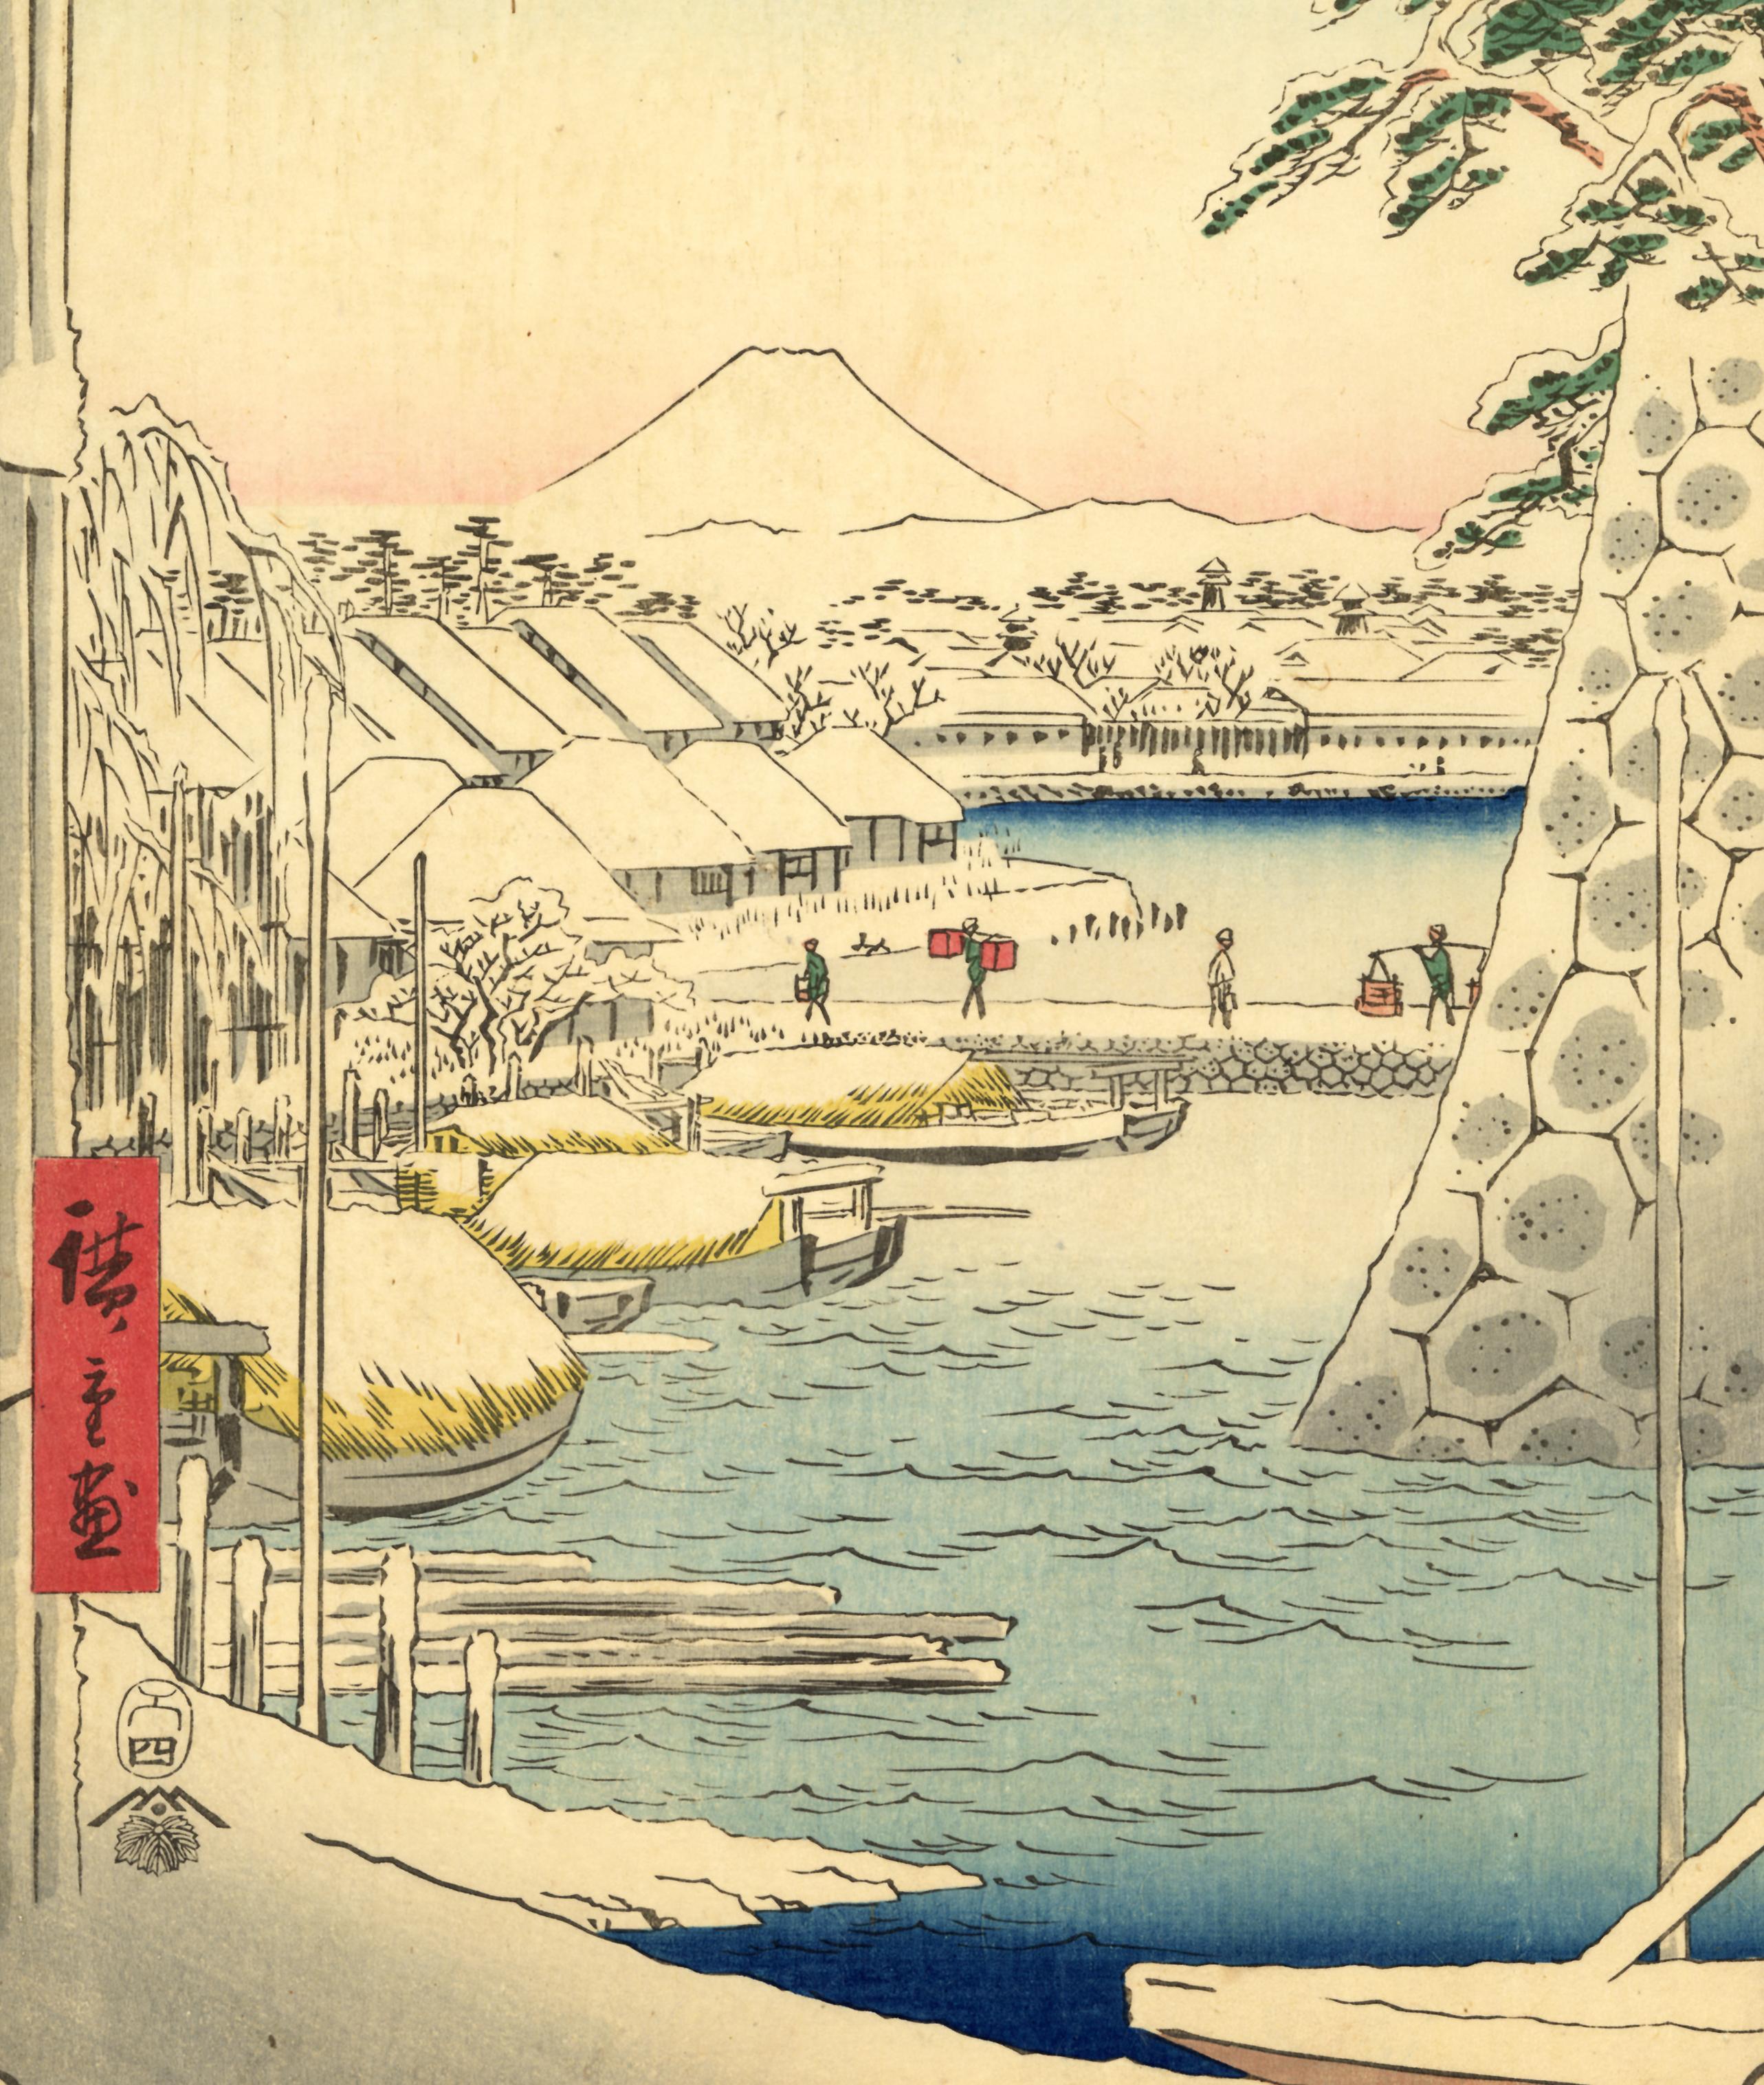 Snow at Sukiyagashi from 36 Views of Mt Fuji - Print by Utagawa Hiroshige (Ando Hiroshige)